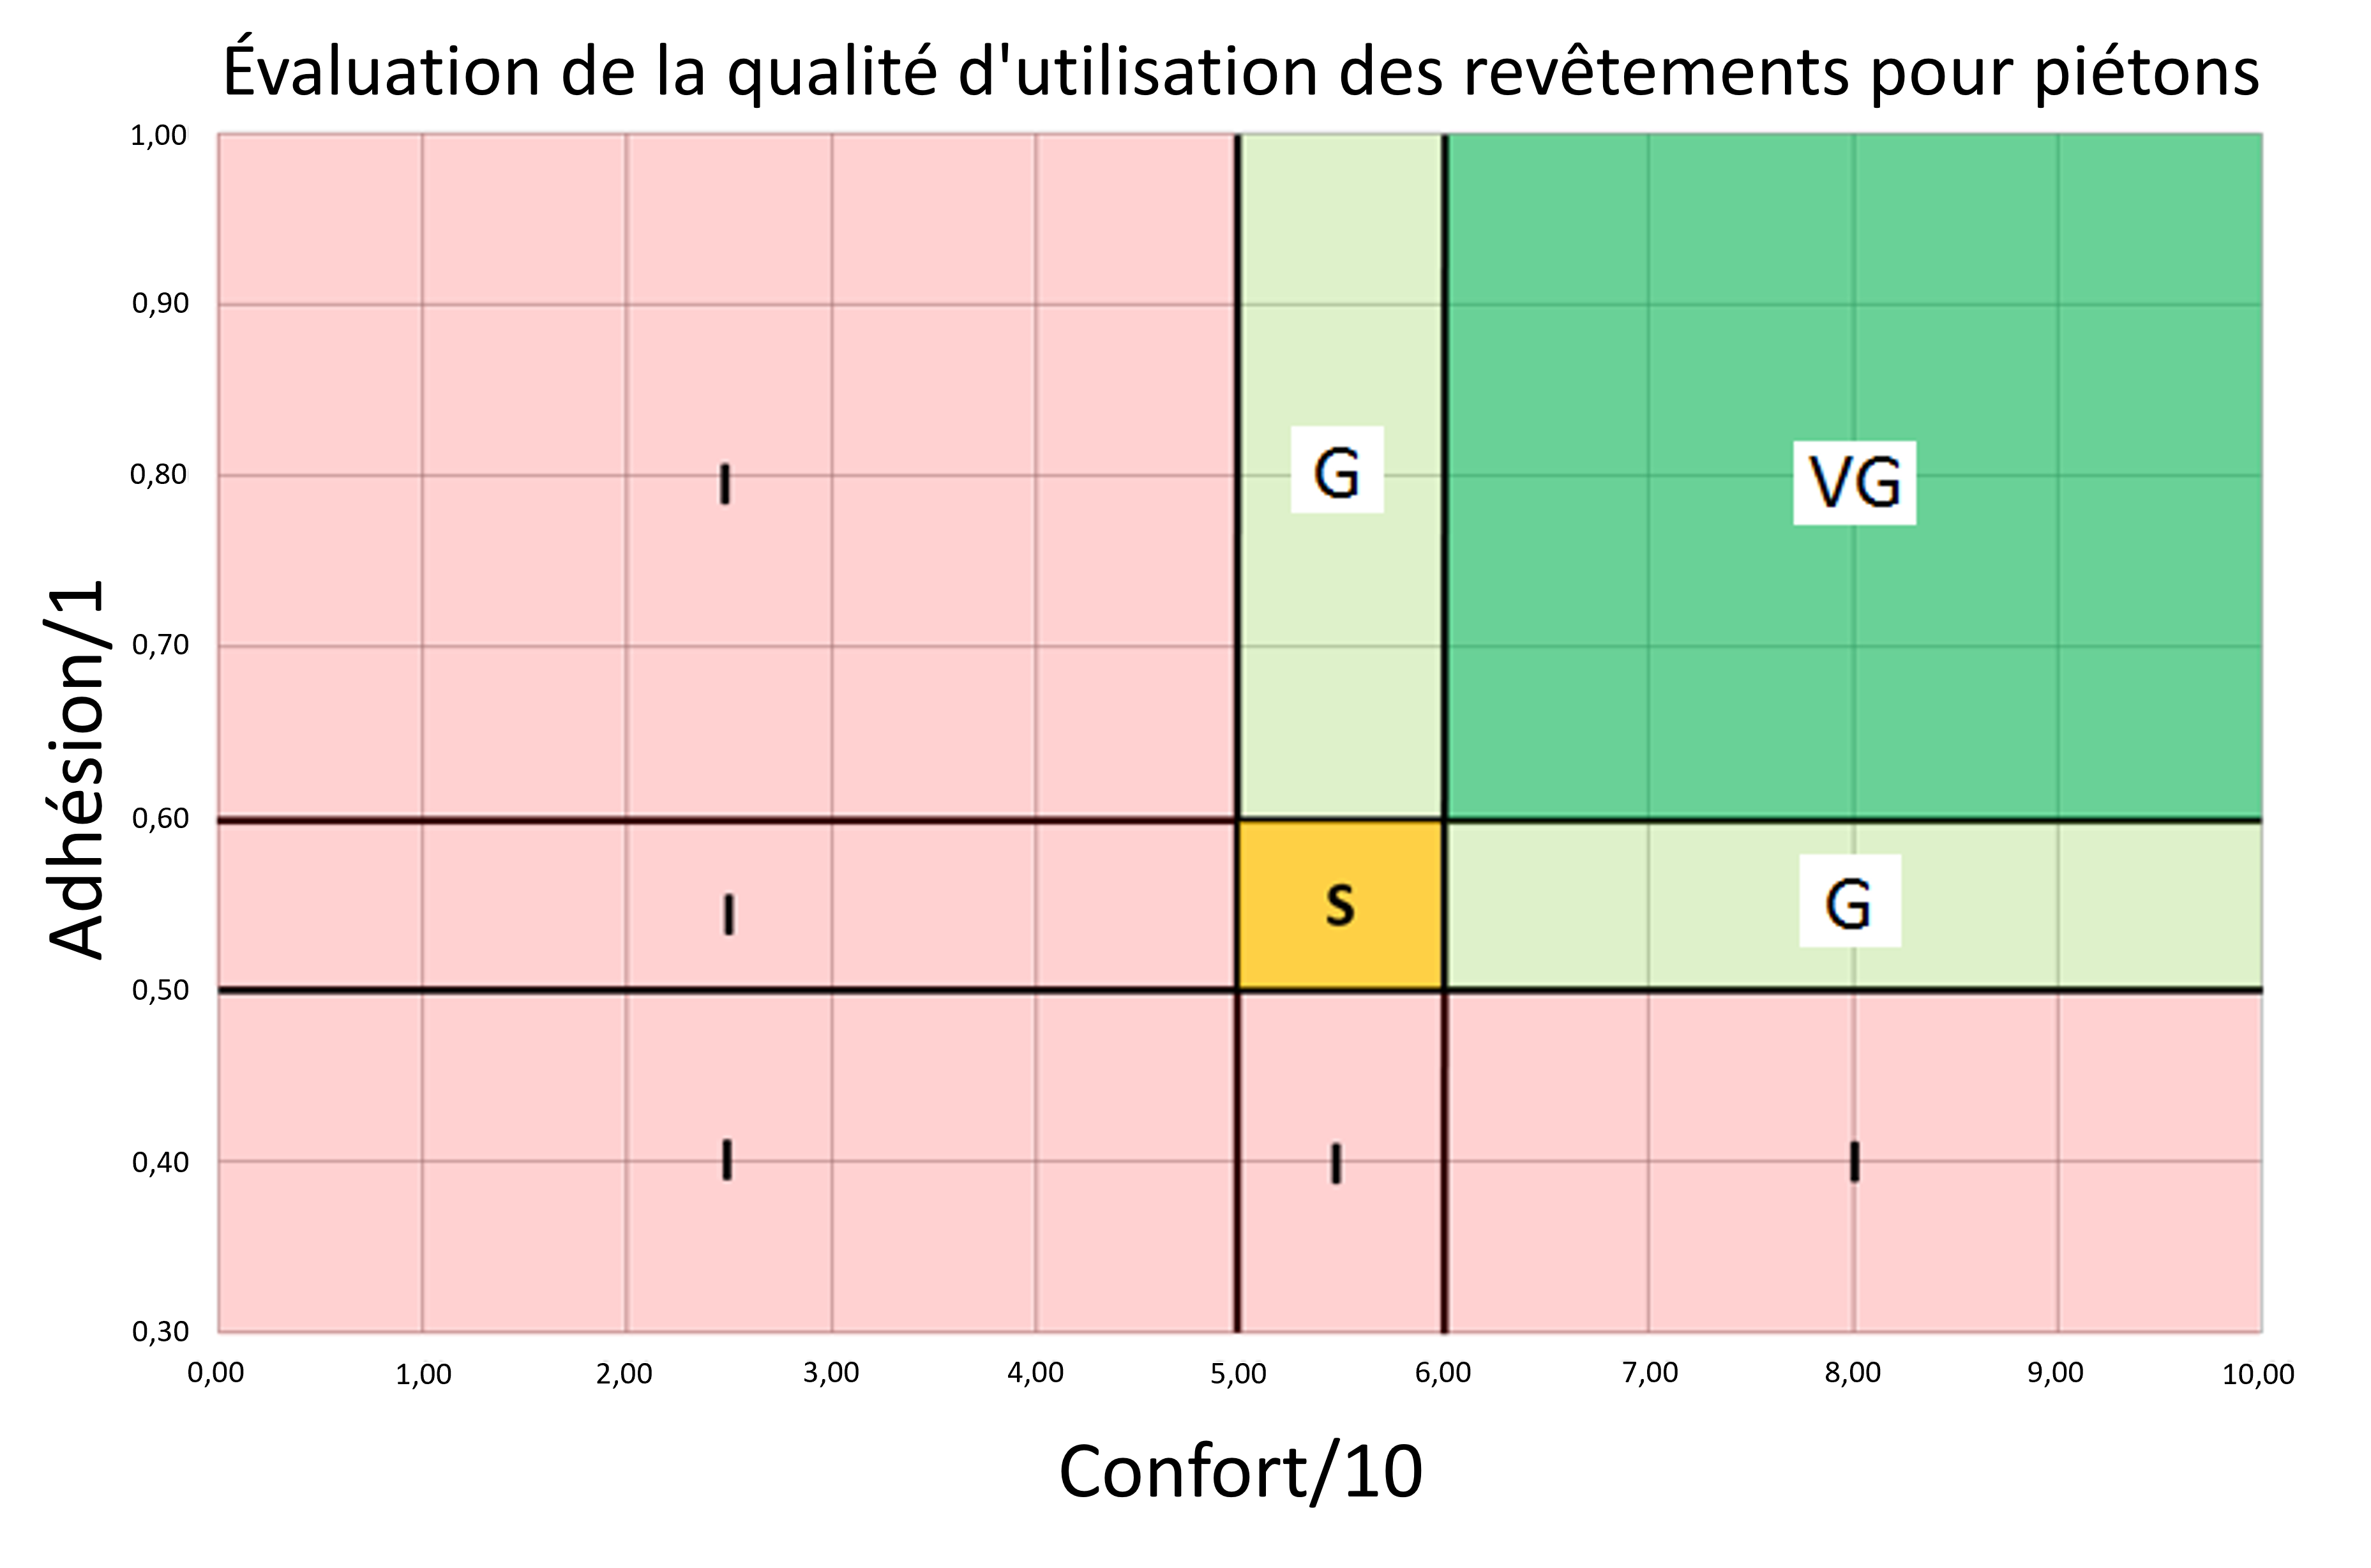 Figure 1.4.7.7 Grille d'évaluation des revêtements des voies piétonnes (Source: BRRC)